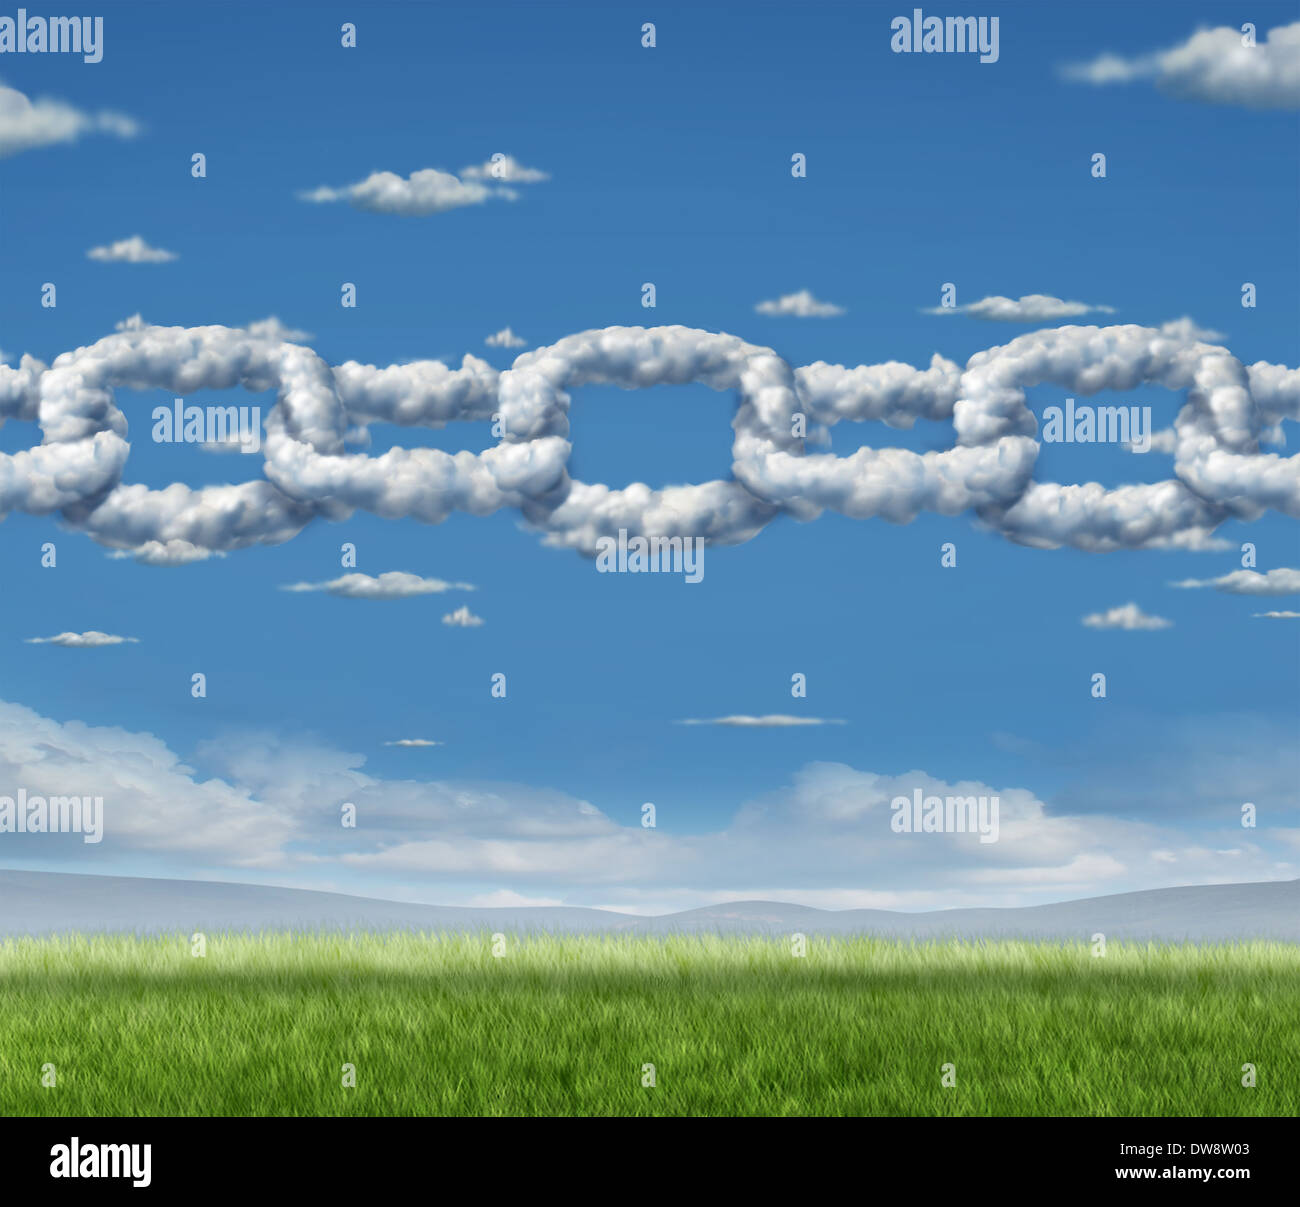 La chaîne Cloud network business concept comme un groupe de cumulus dans le ciel en forme de chaîne reliés reliés ensemble comme une icône de la coopération technologique et financière ou la qualité de l'air de l'environnement partenariat. Banque D'Images